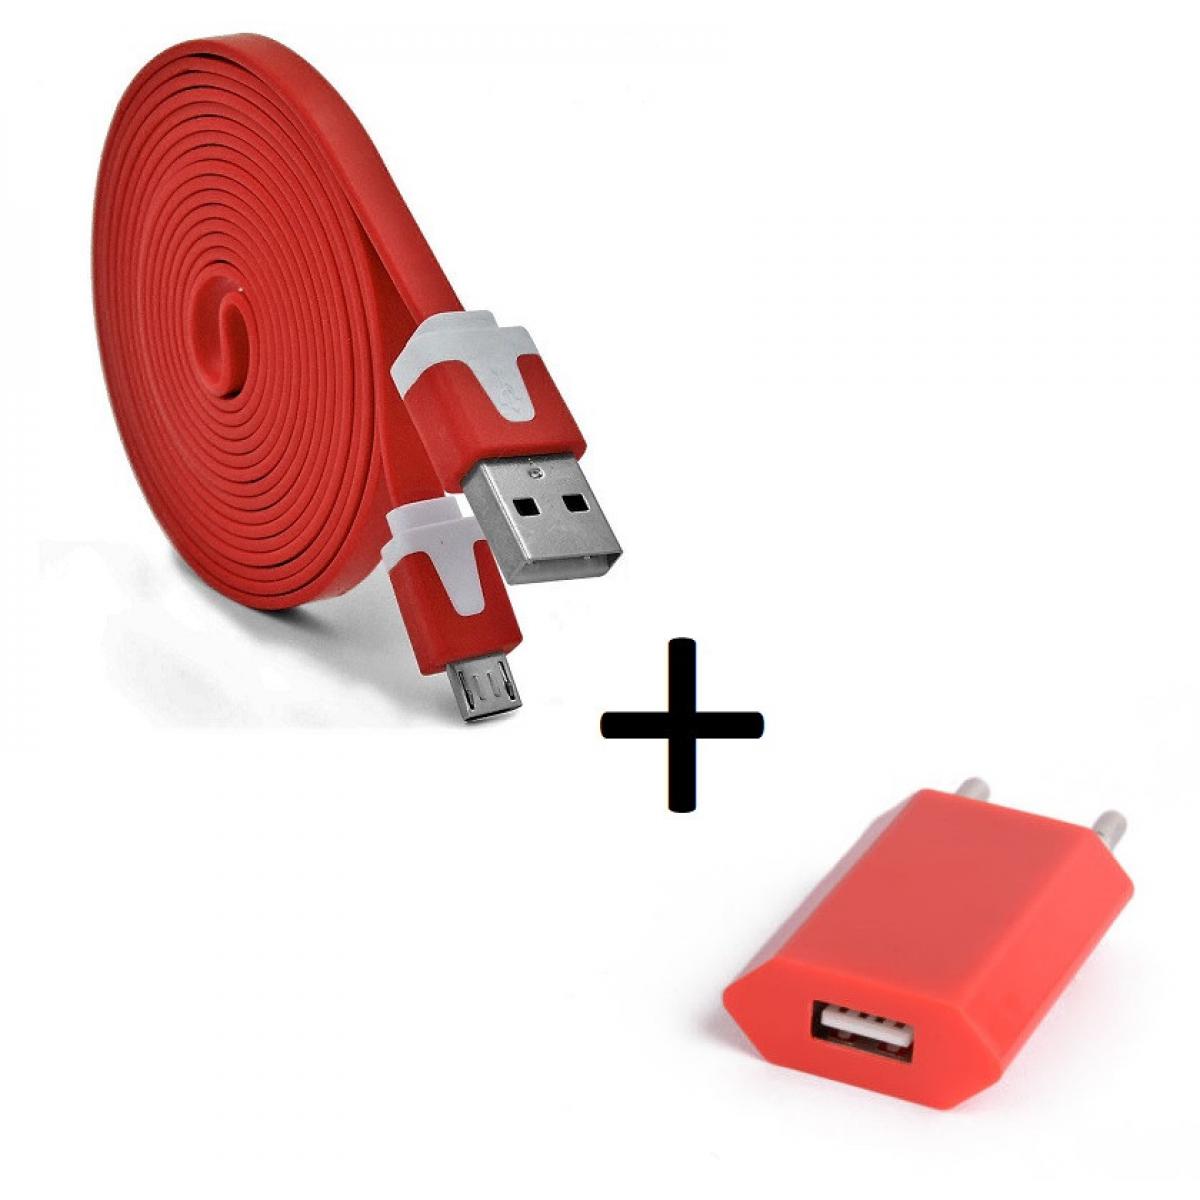 Shot - Pack Chargeur pour WIKO View 2 Plus Micro USB (Cable Noodle 3m + Prise Secteur Couleur USB) Android (ROUGE) - Chargeur secteur téléphone